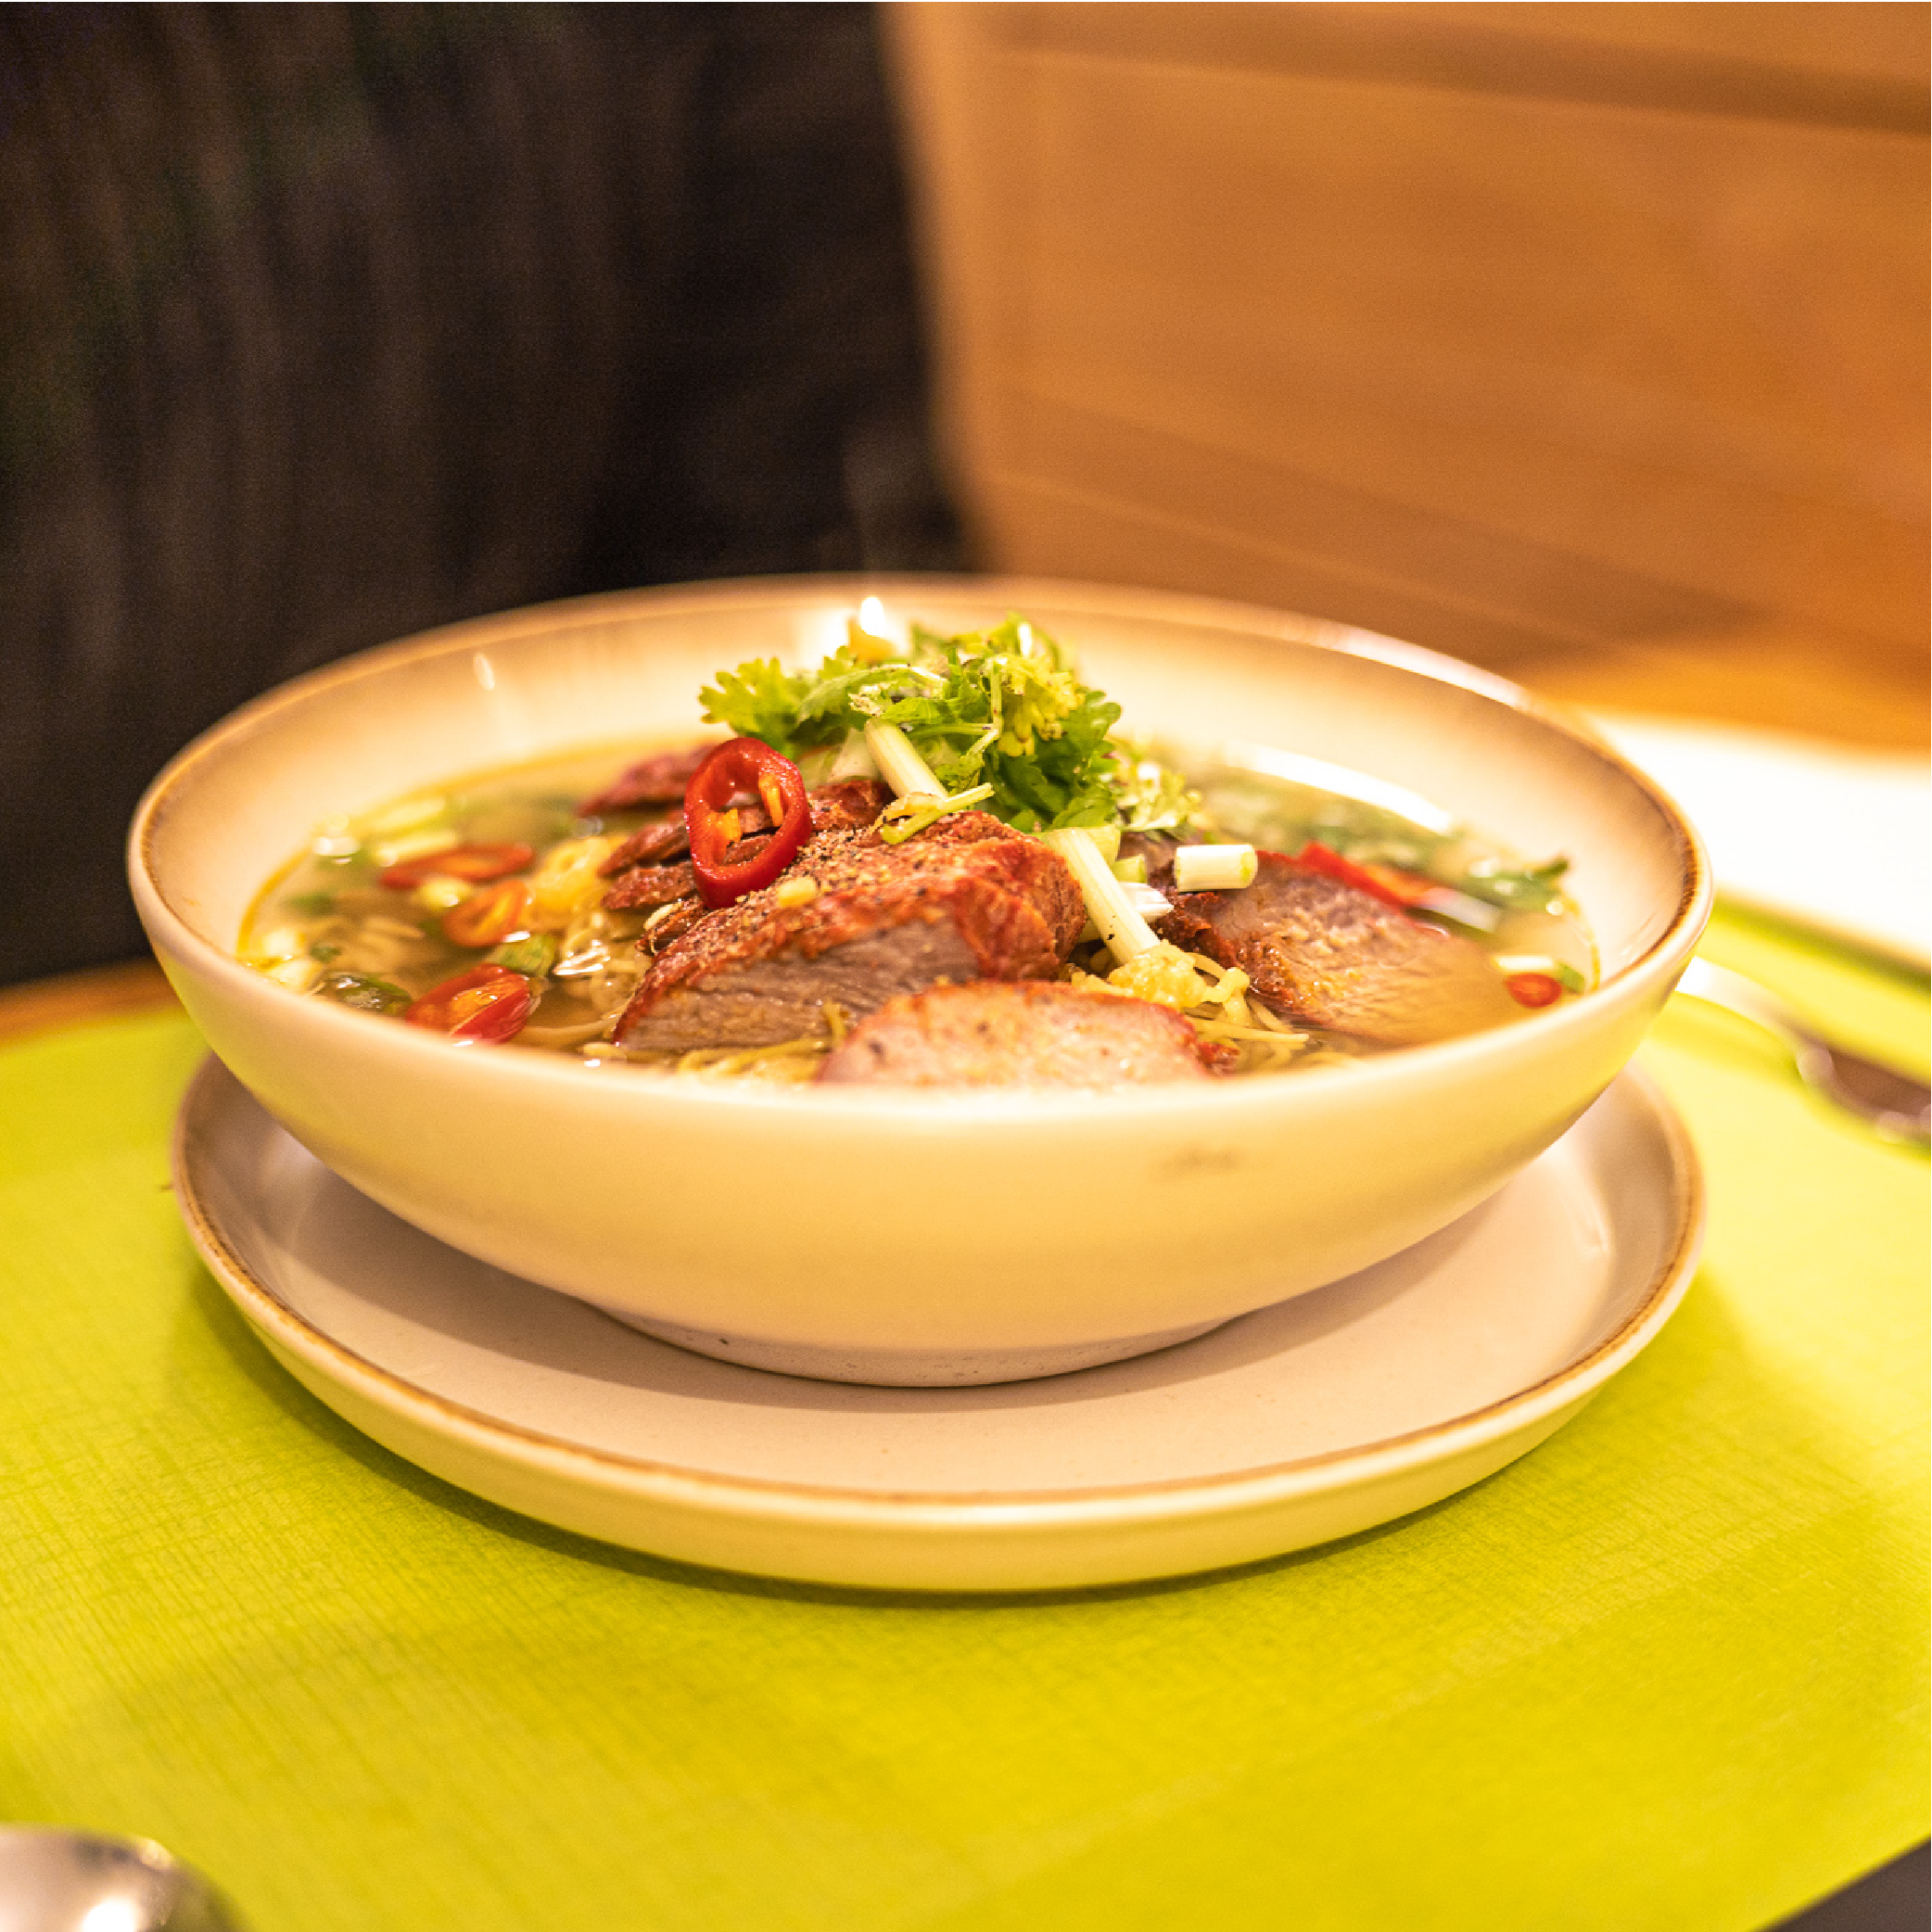 Neben Reis- und Nudelgerichte sind auch Suppen sehr beliebte Mahlzeiten.